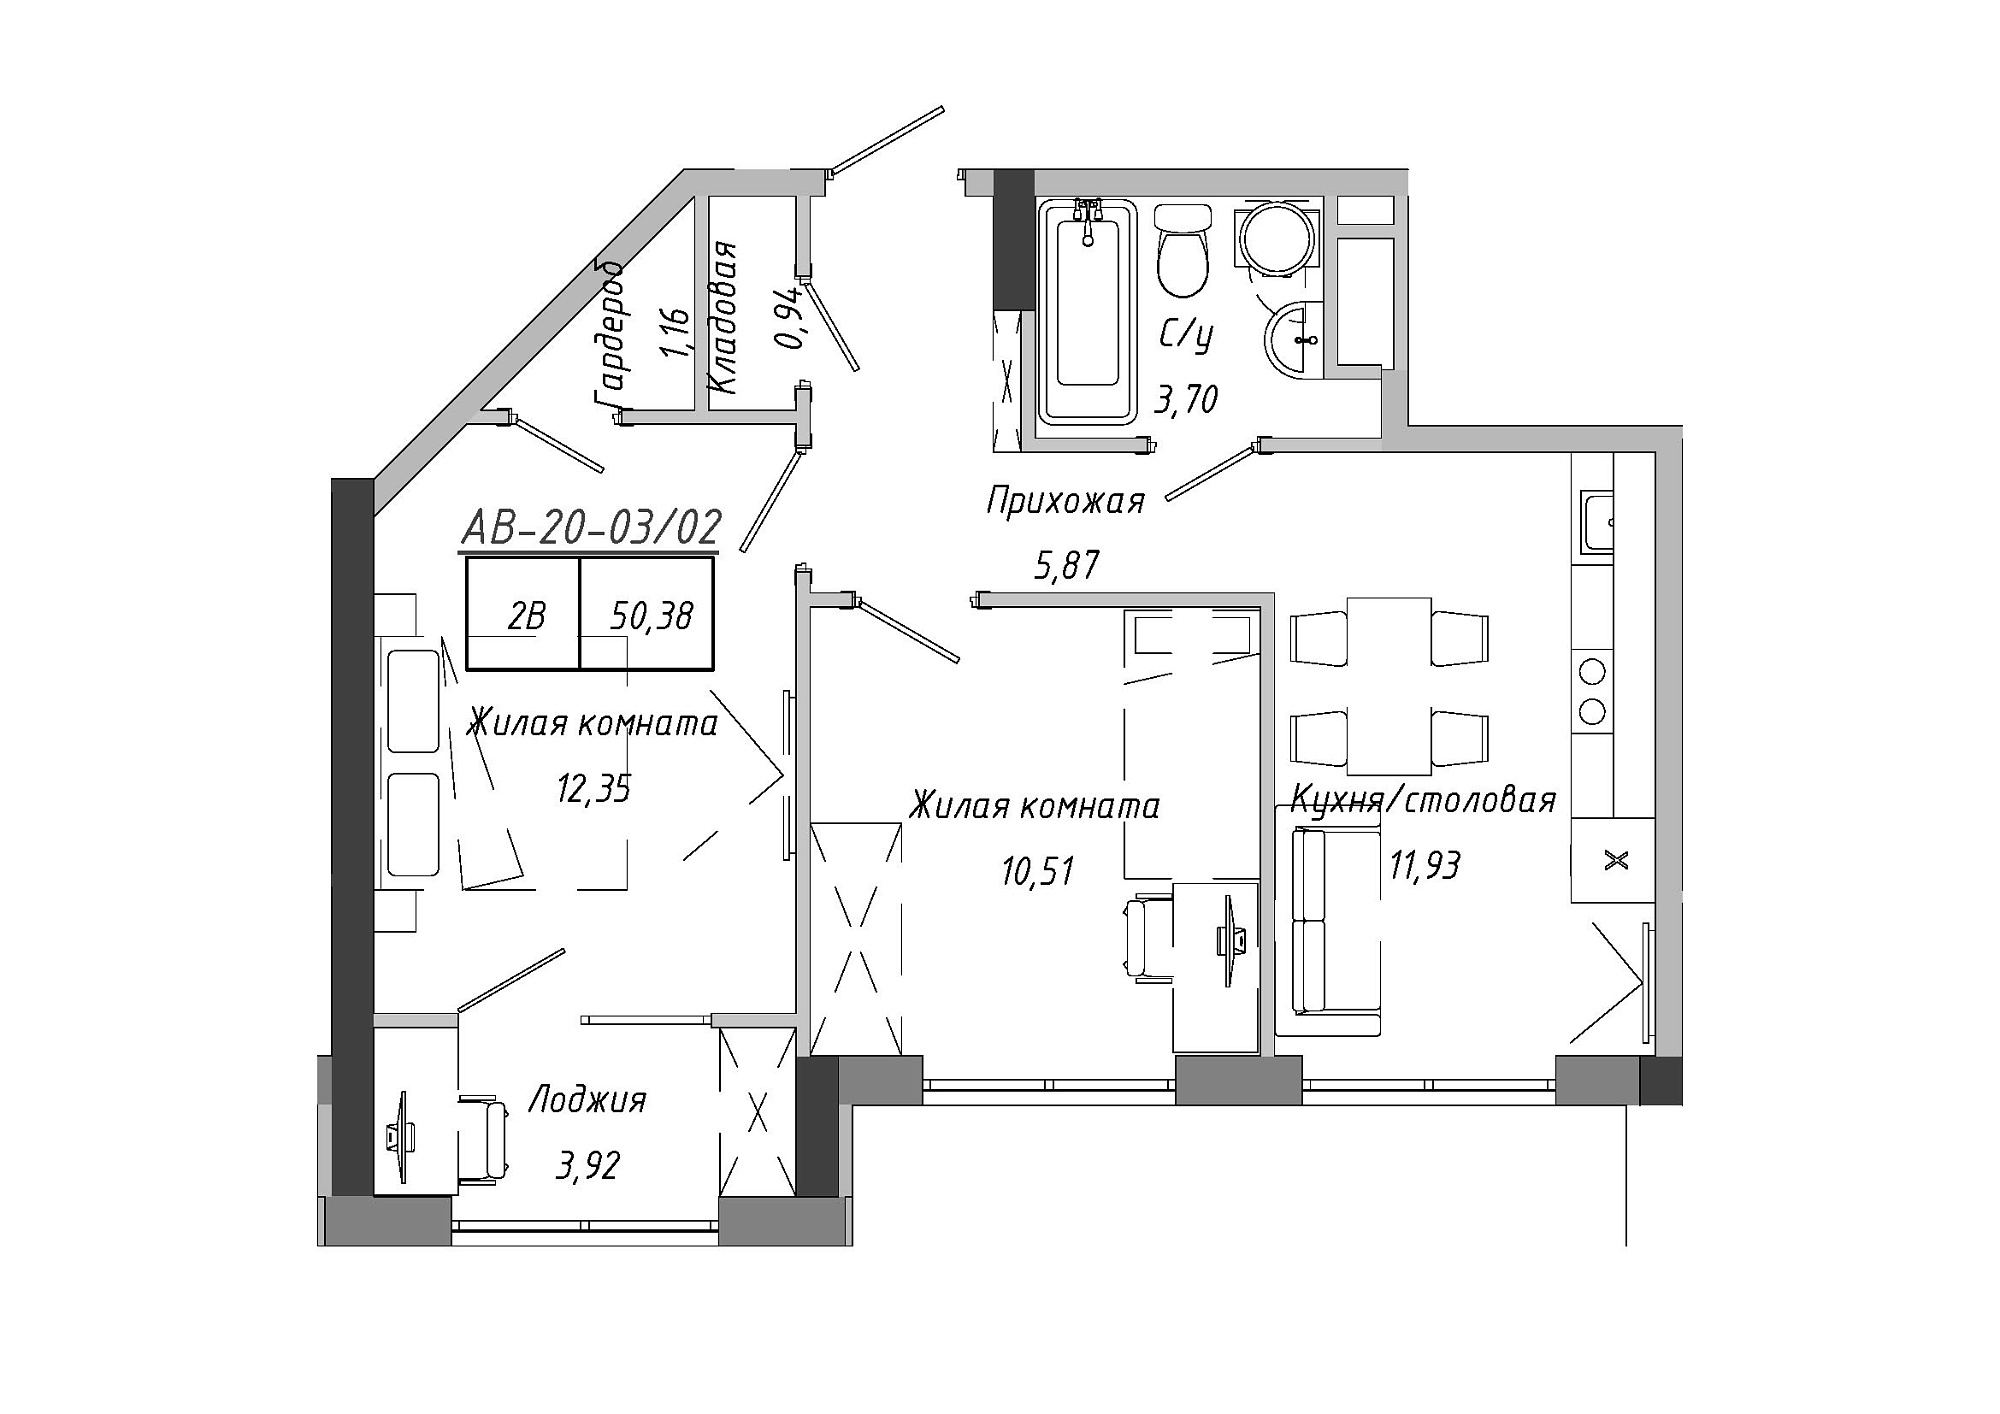 Планування 2-к квартира площею 50.38м2, AB-20-03/00002.